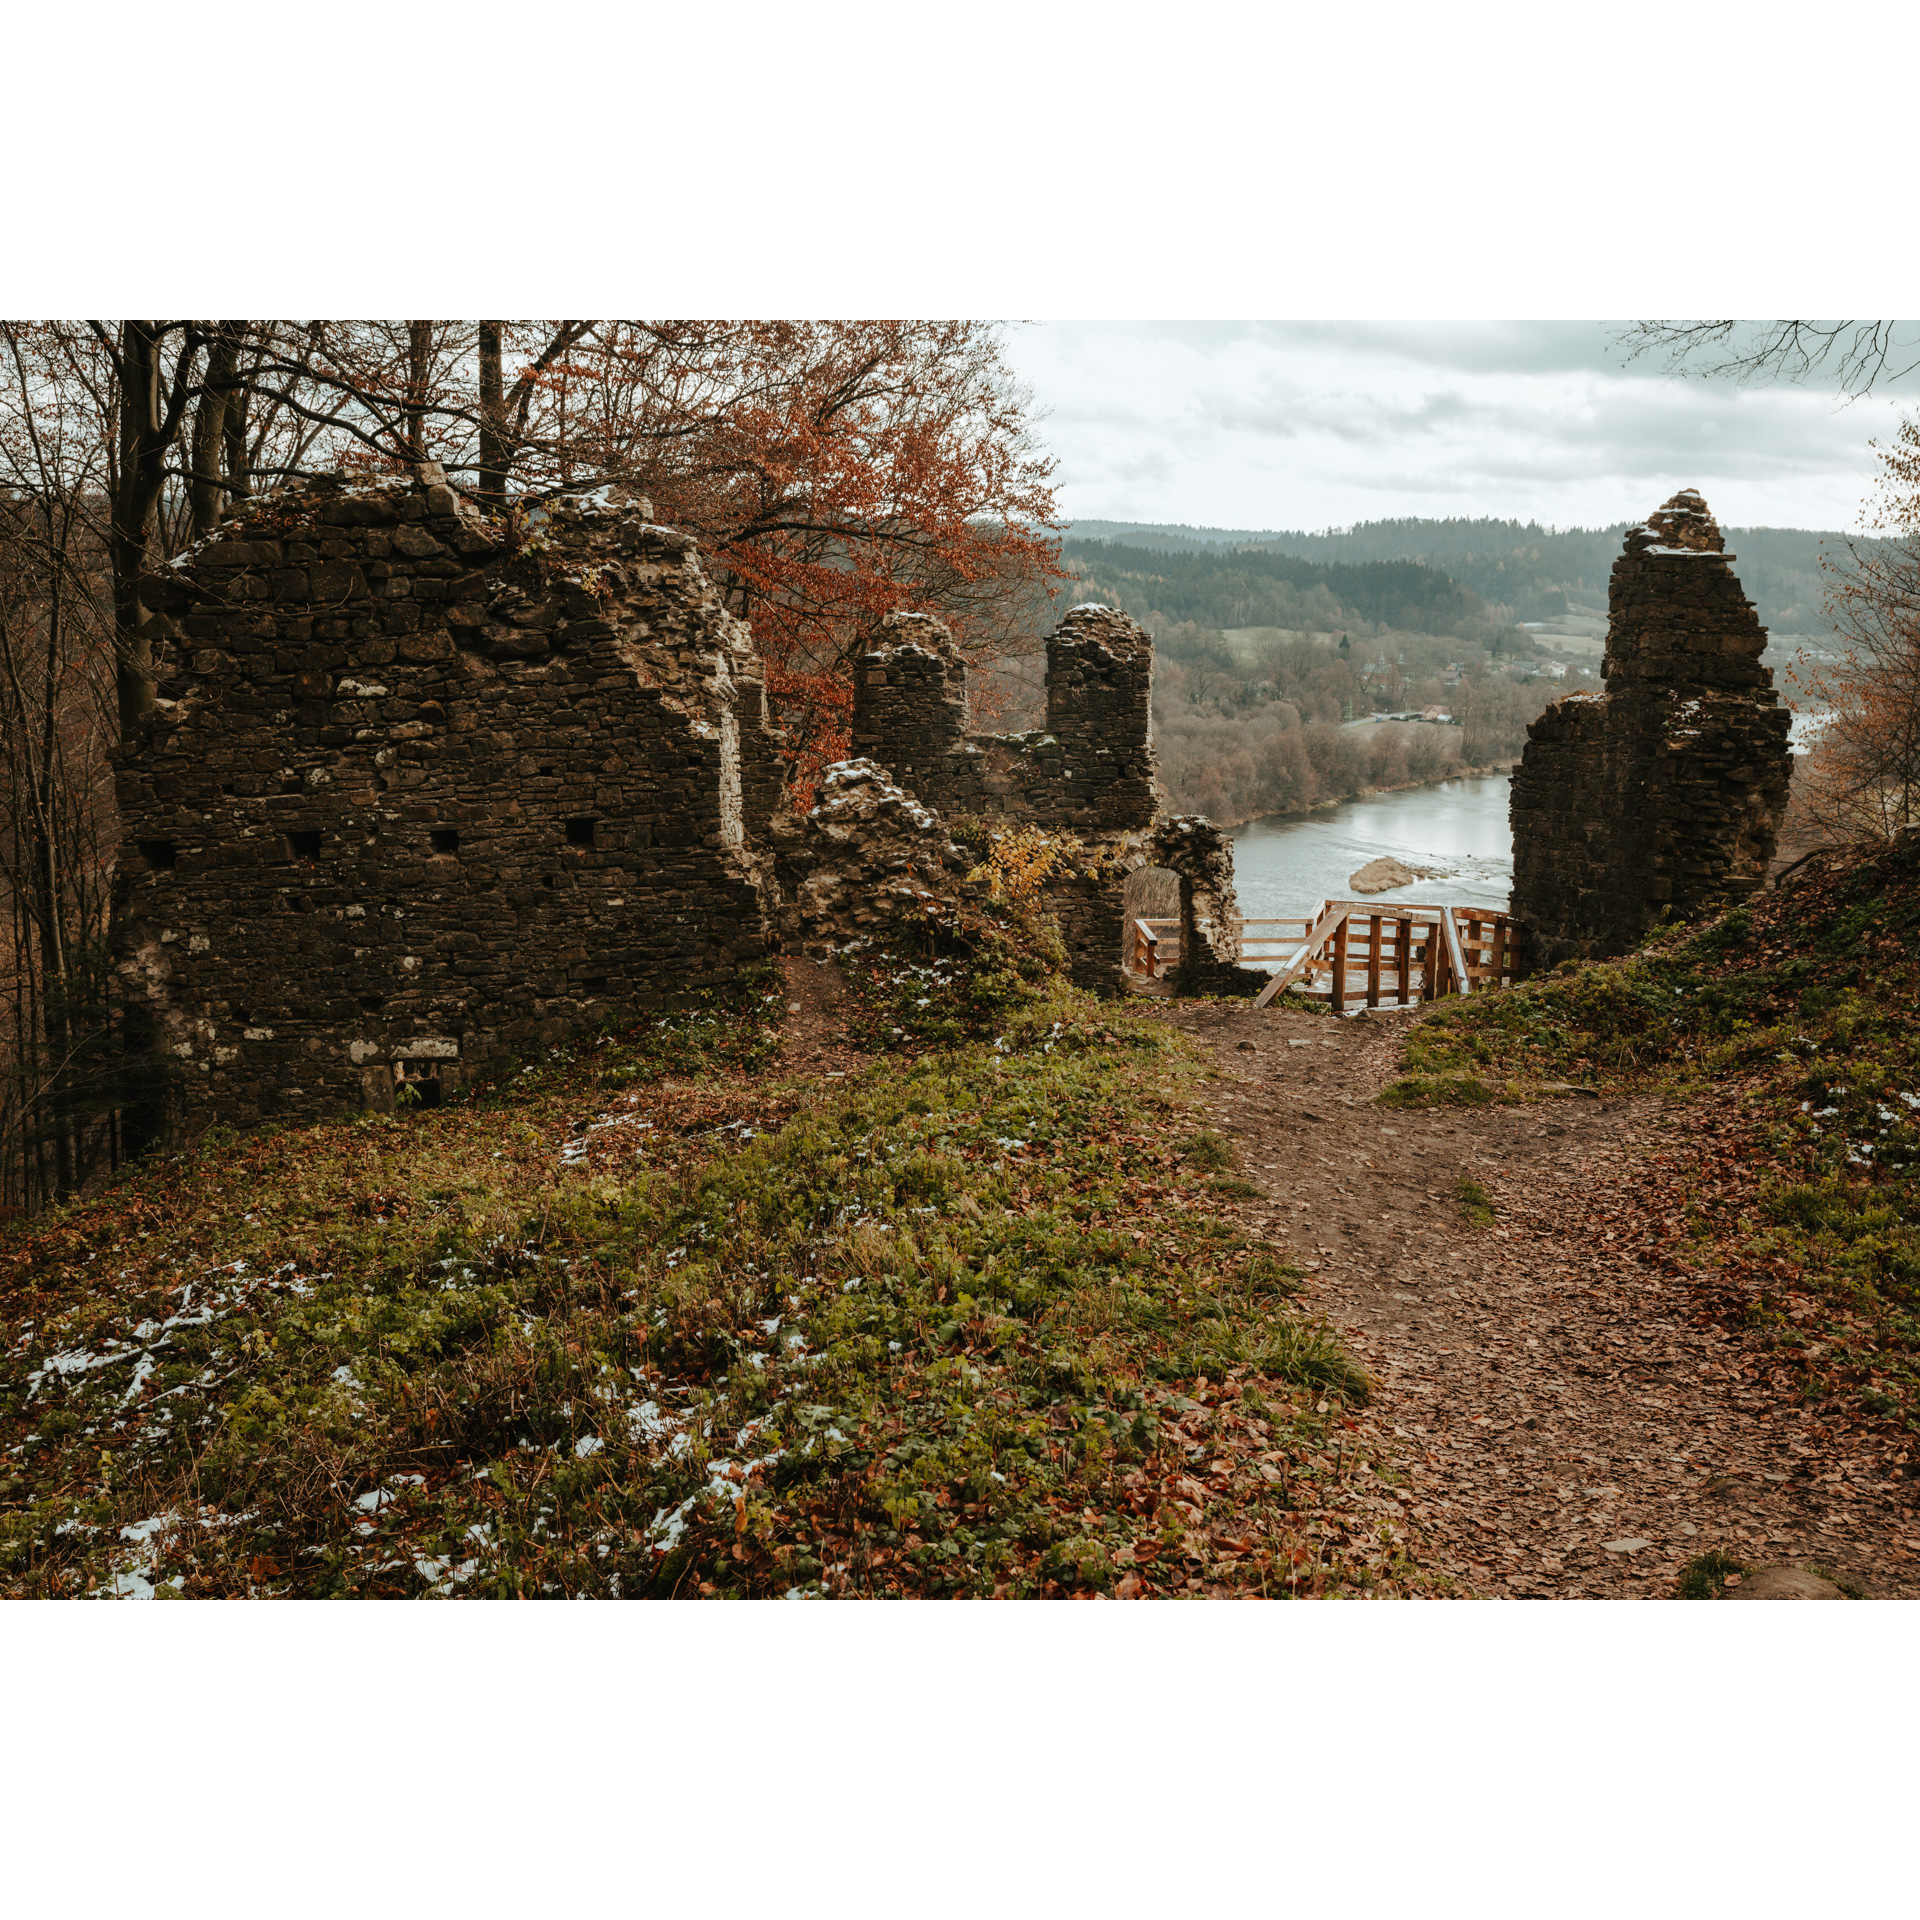 Ruiny zamku z wejściem na drewniany taras widokowy na tle płynącej rzeki